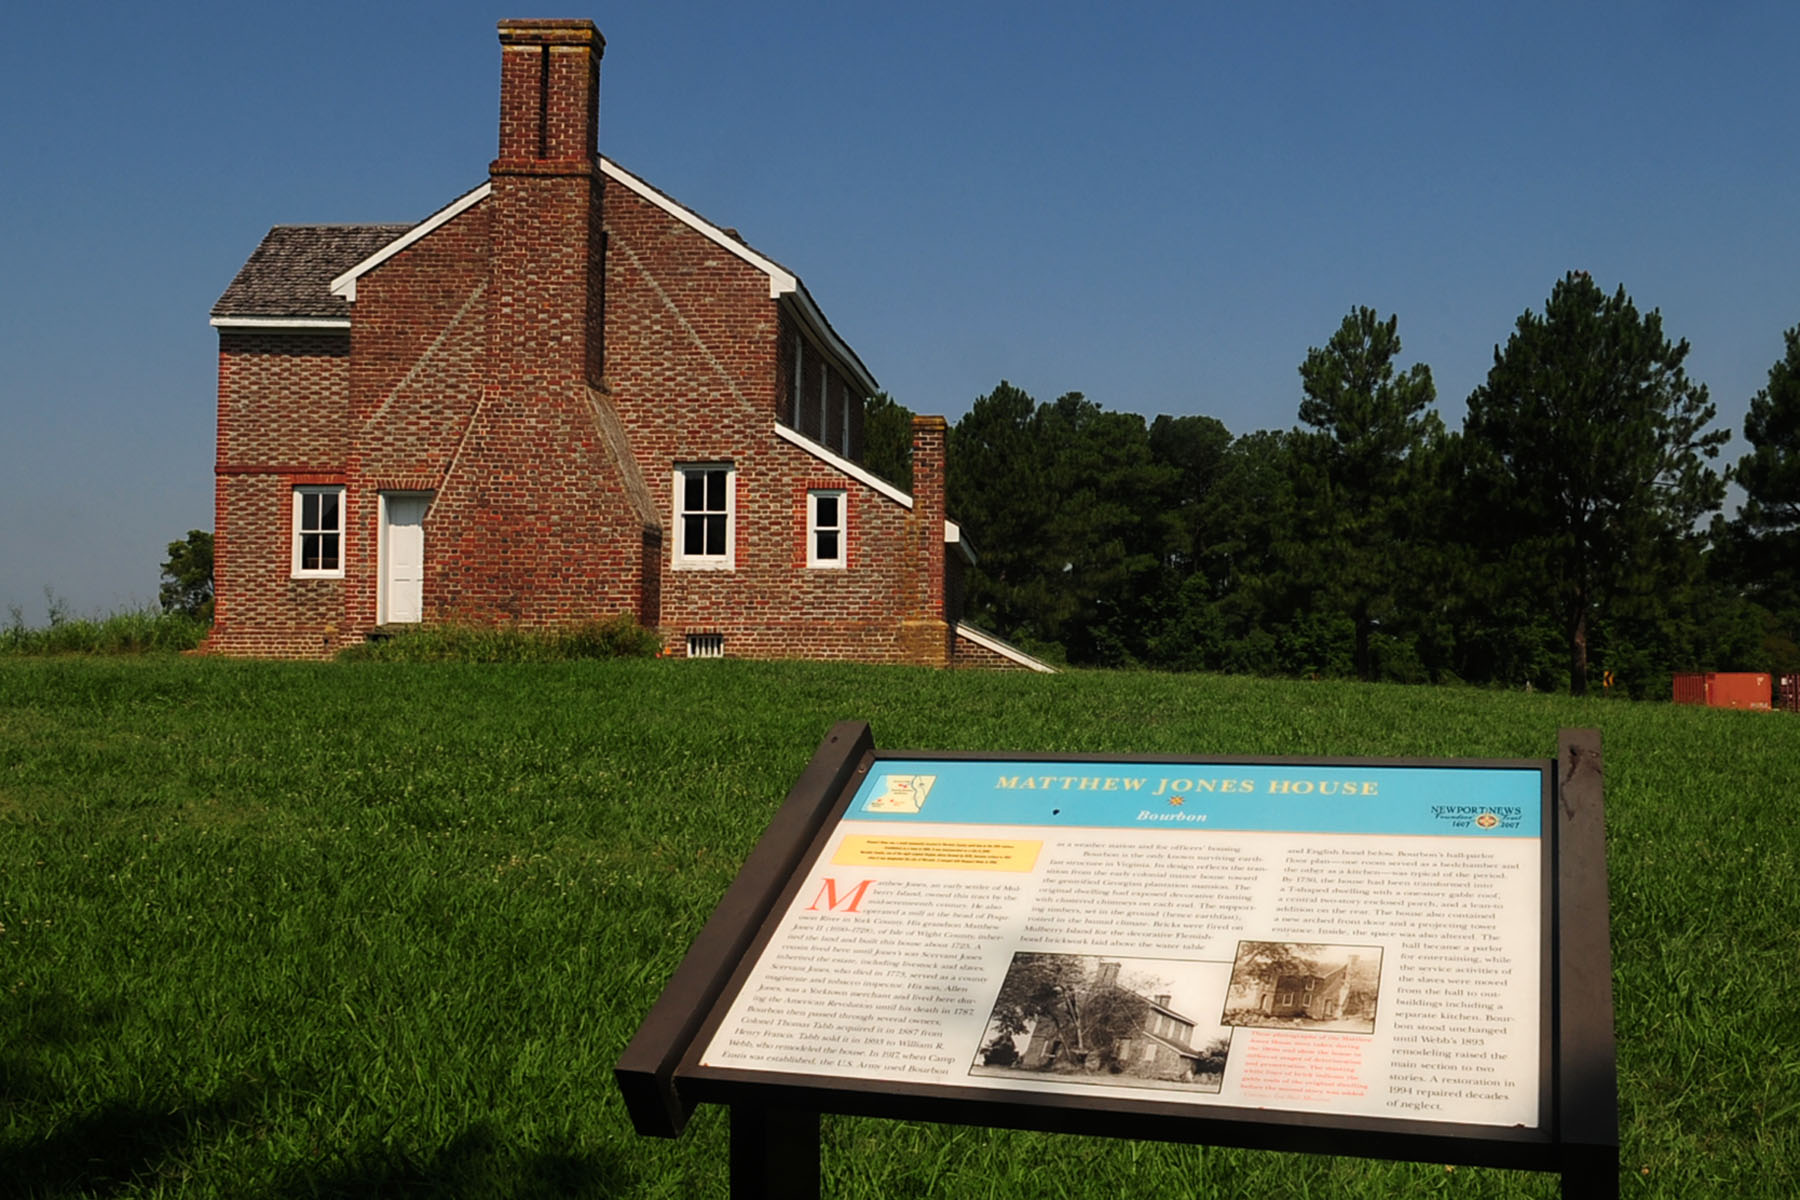 The Matthew Jones House Inside the history of Fort Eustis